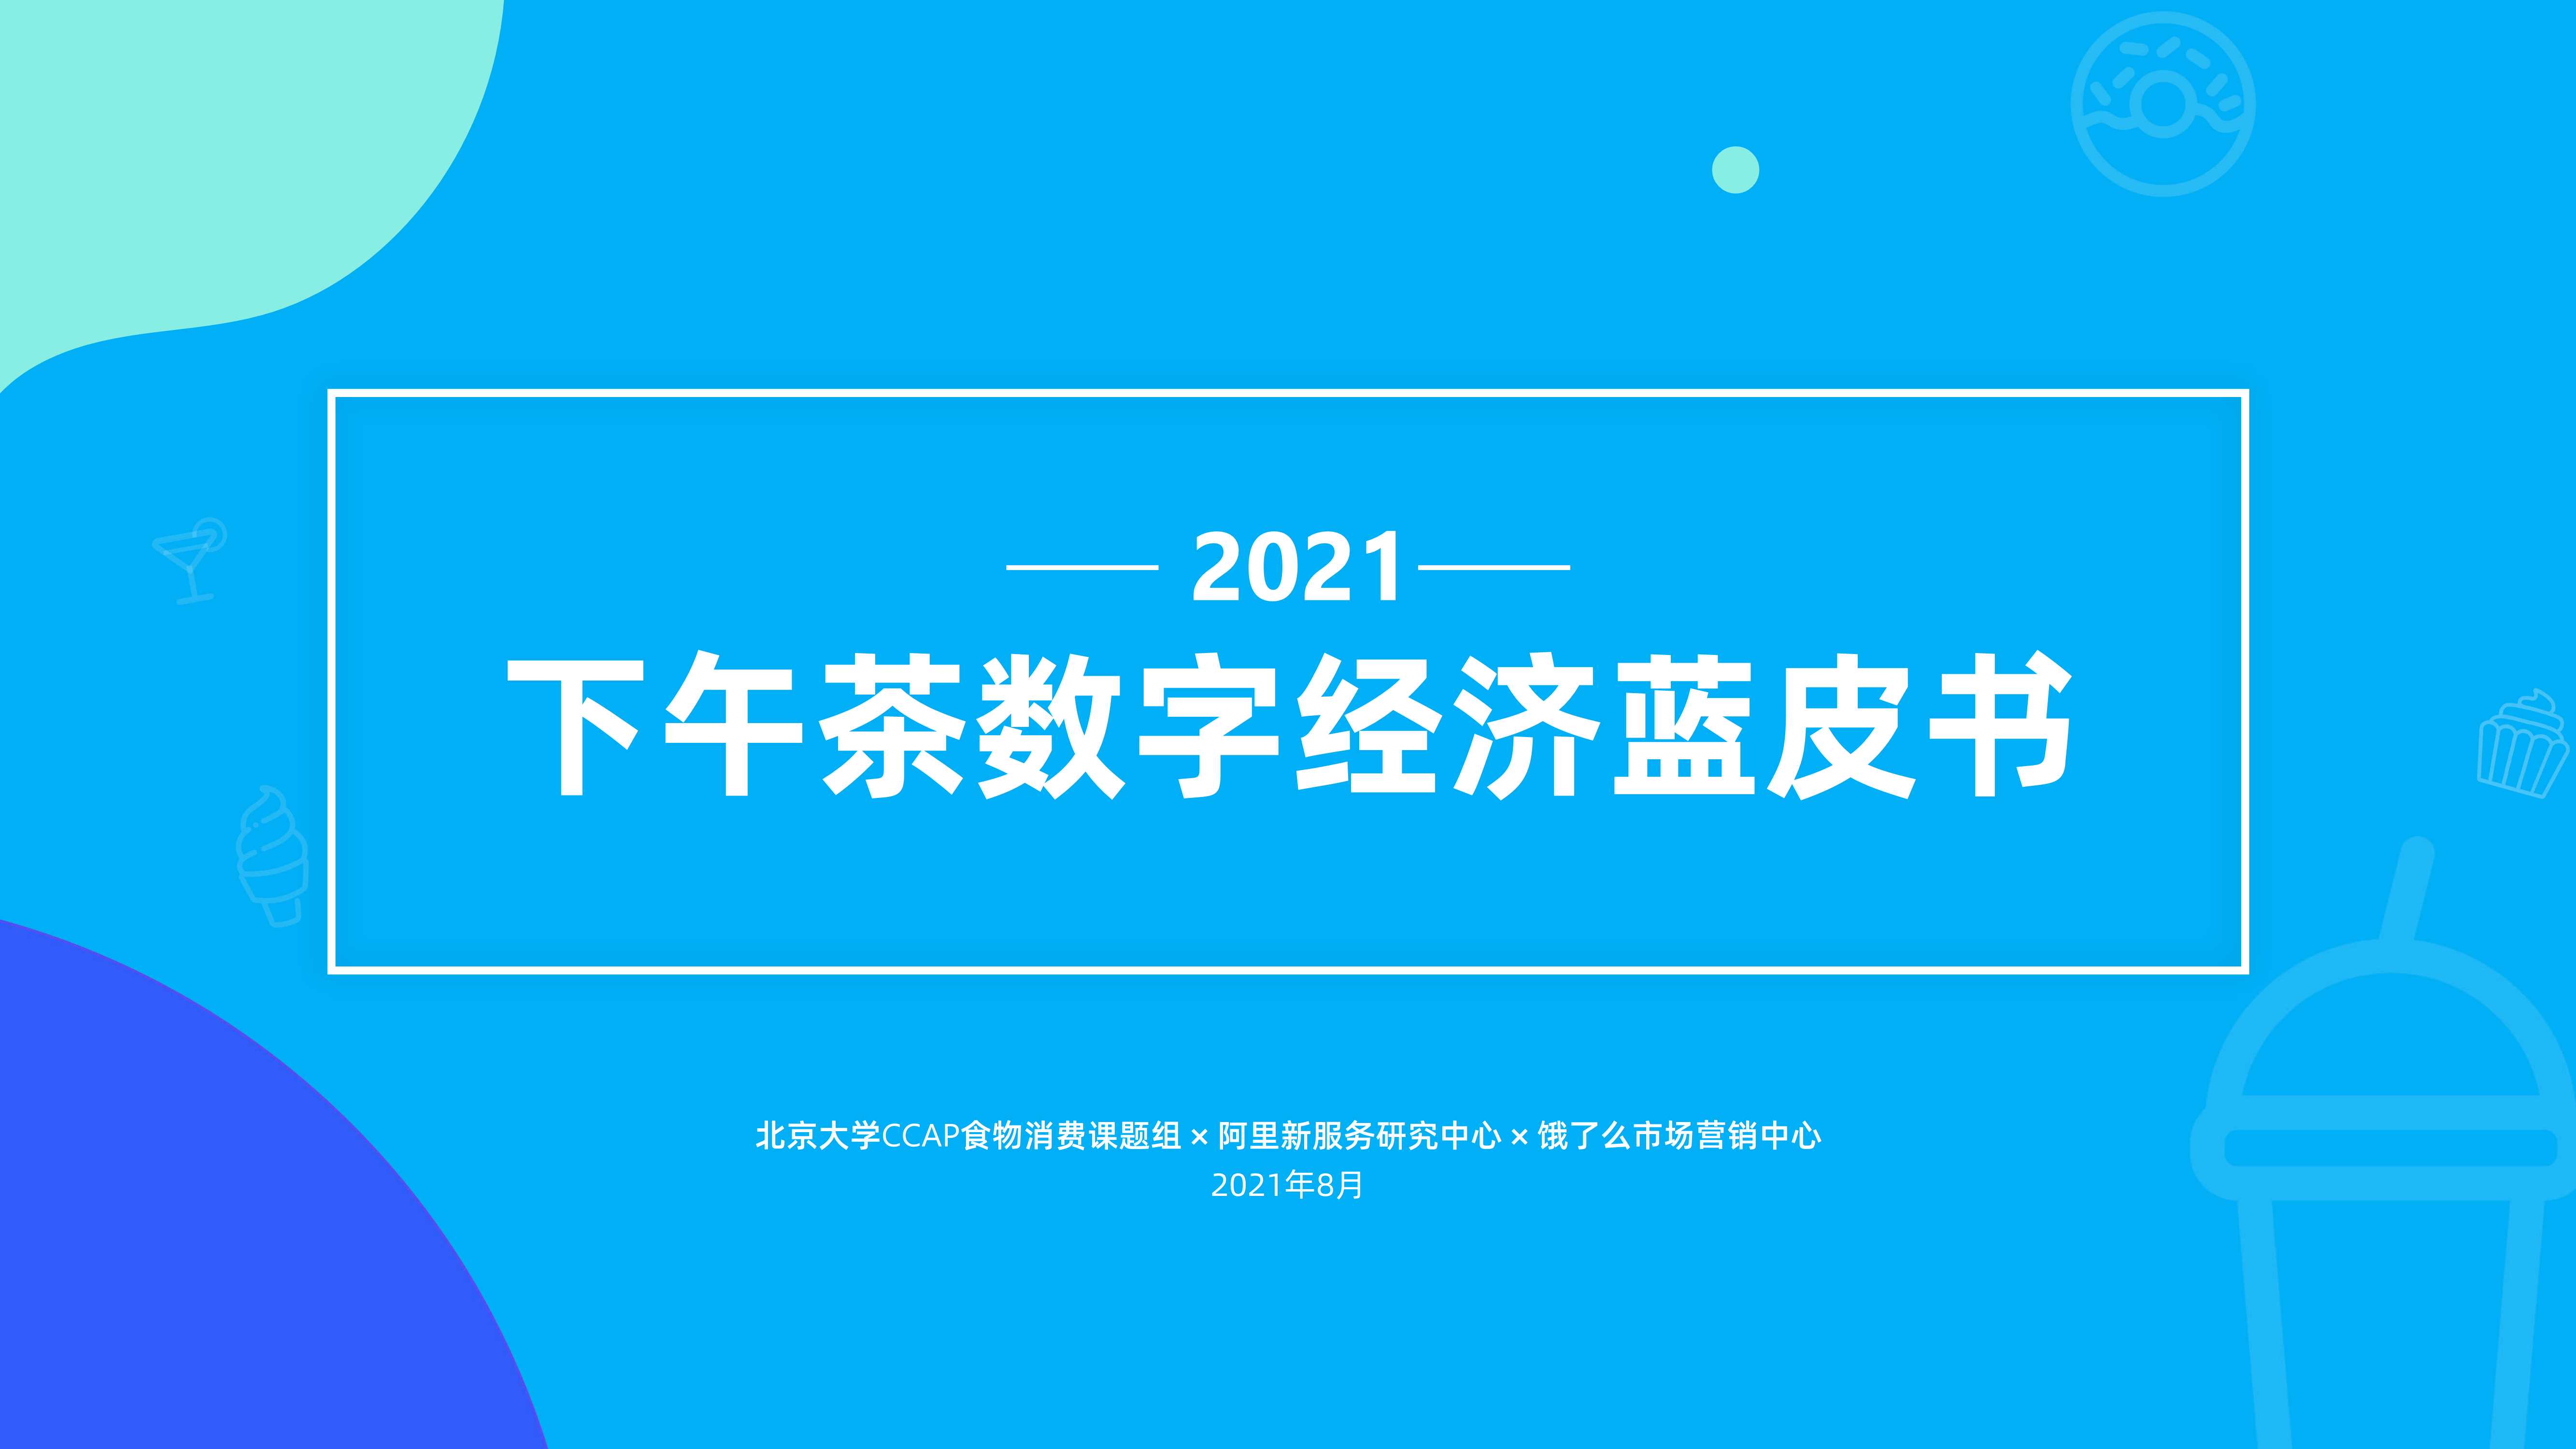 新服务研究中心2021下午茶数字经济蓝皮书-2021.08-38页